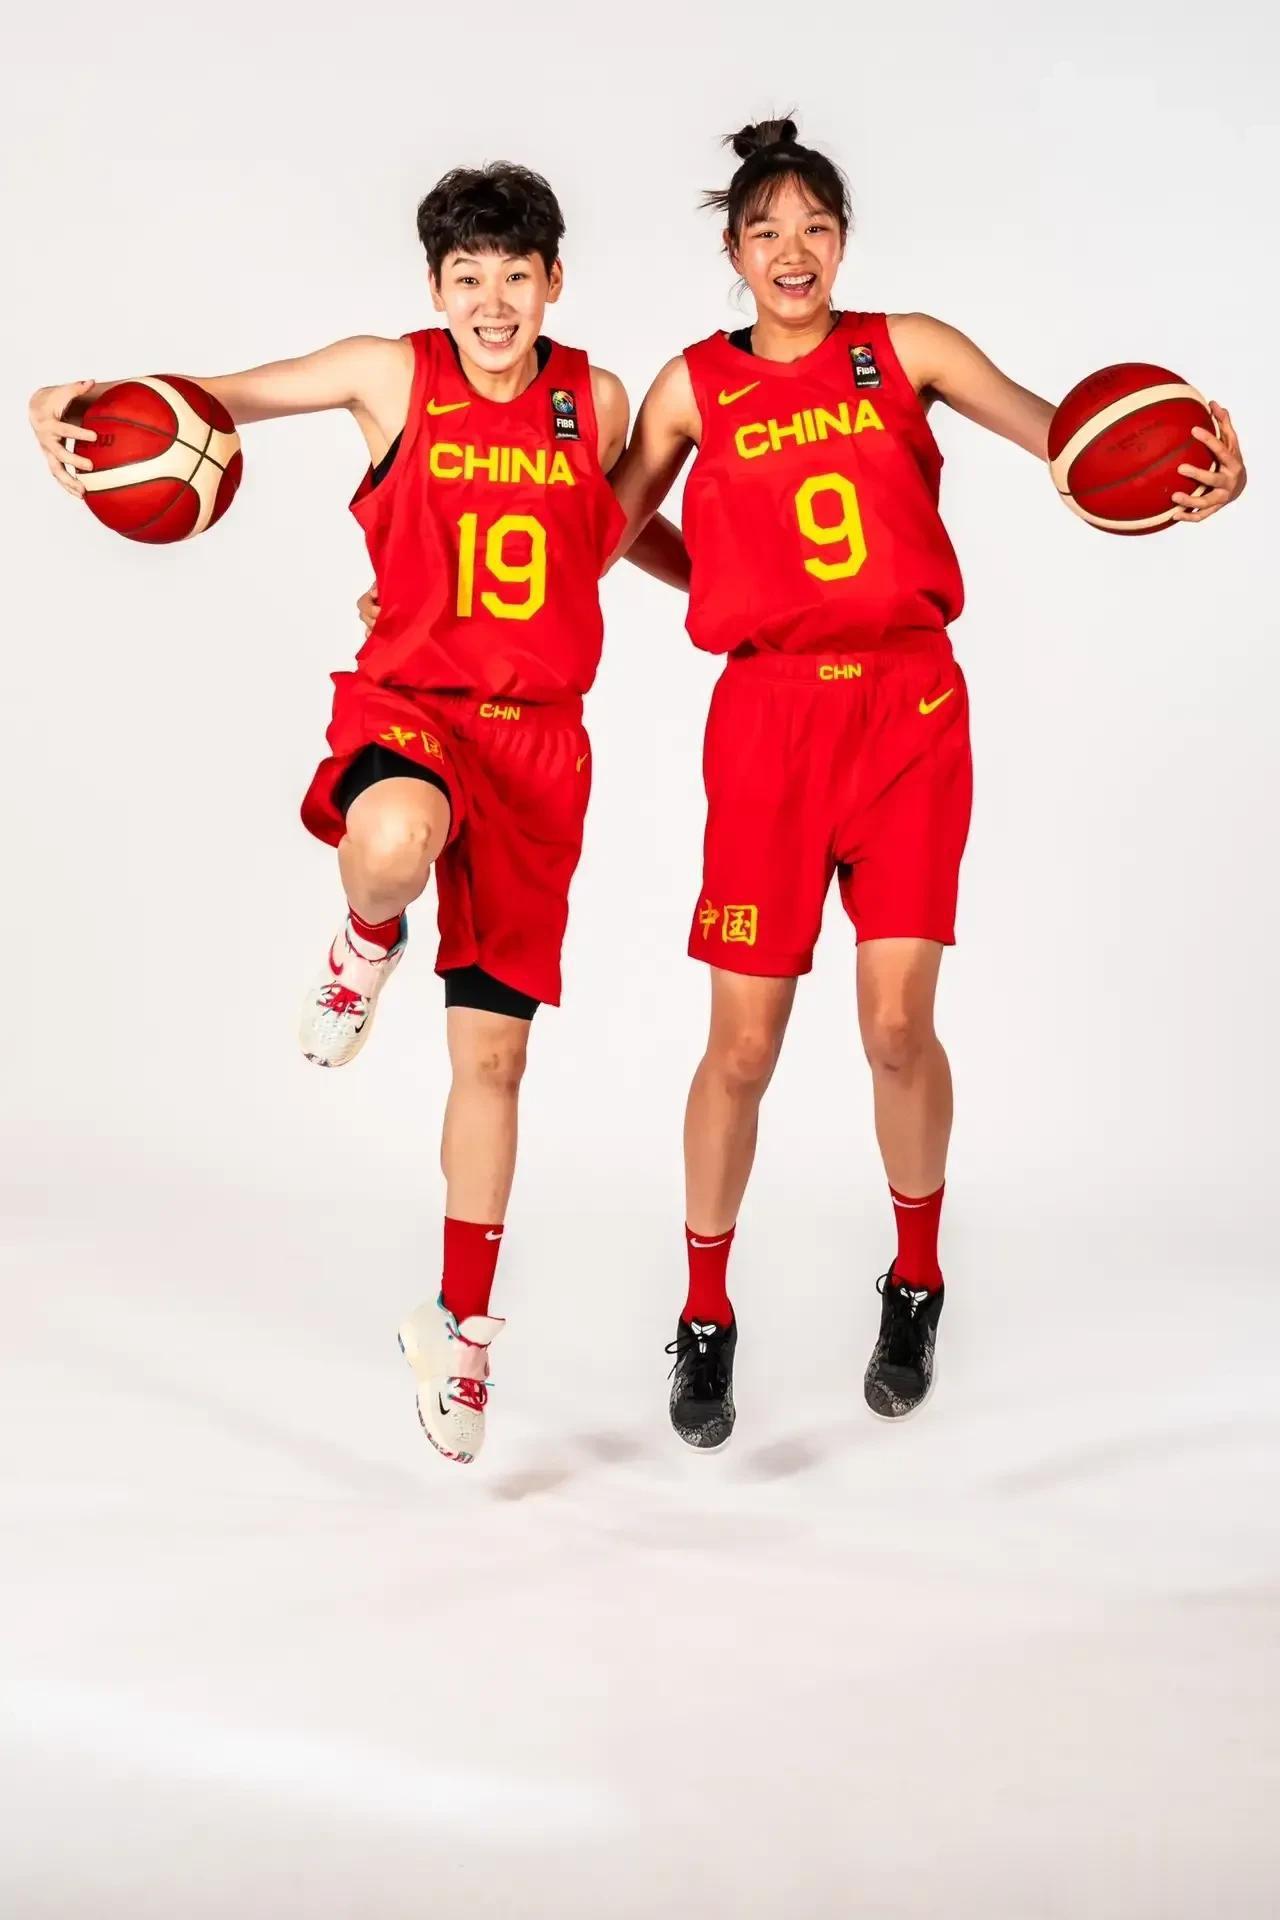 李青阳是下一个李梦！
U19中国女篮62-83不敌加拿大，
李青阳与胡多灵很敢打(2)